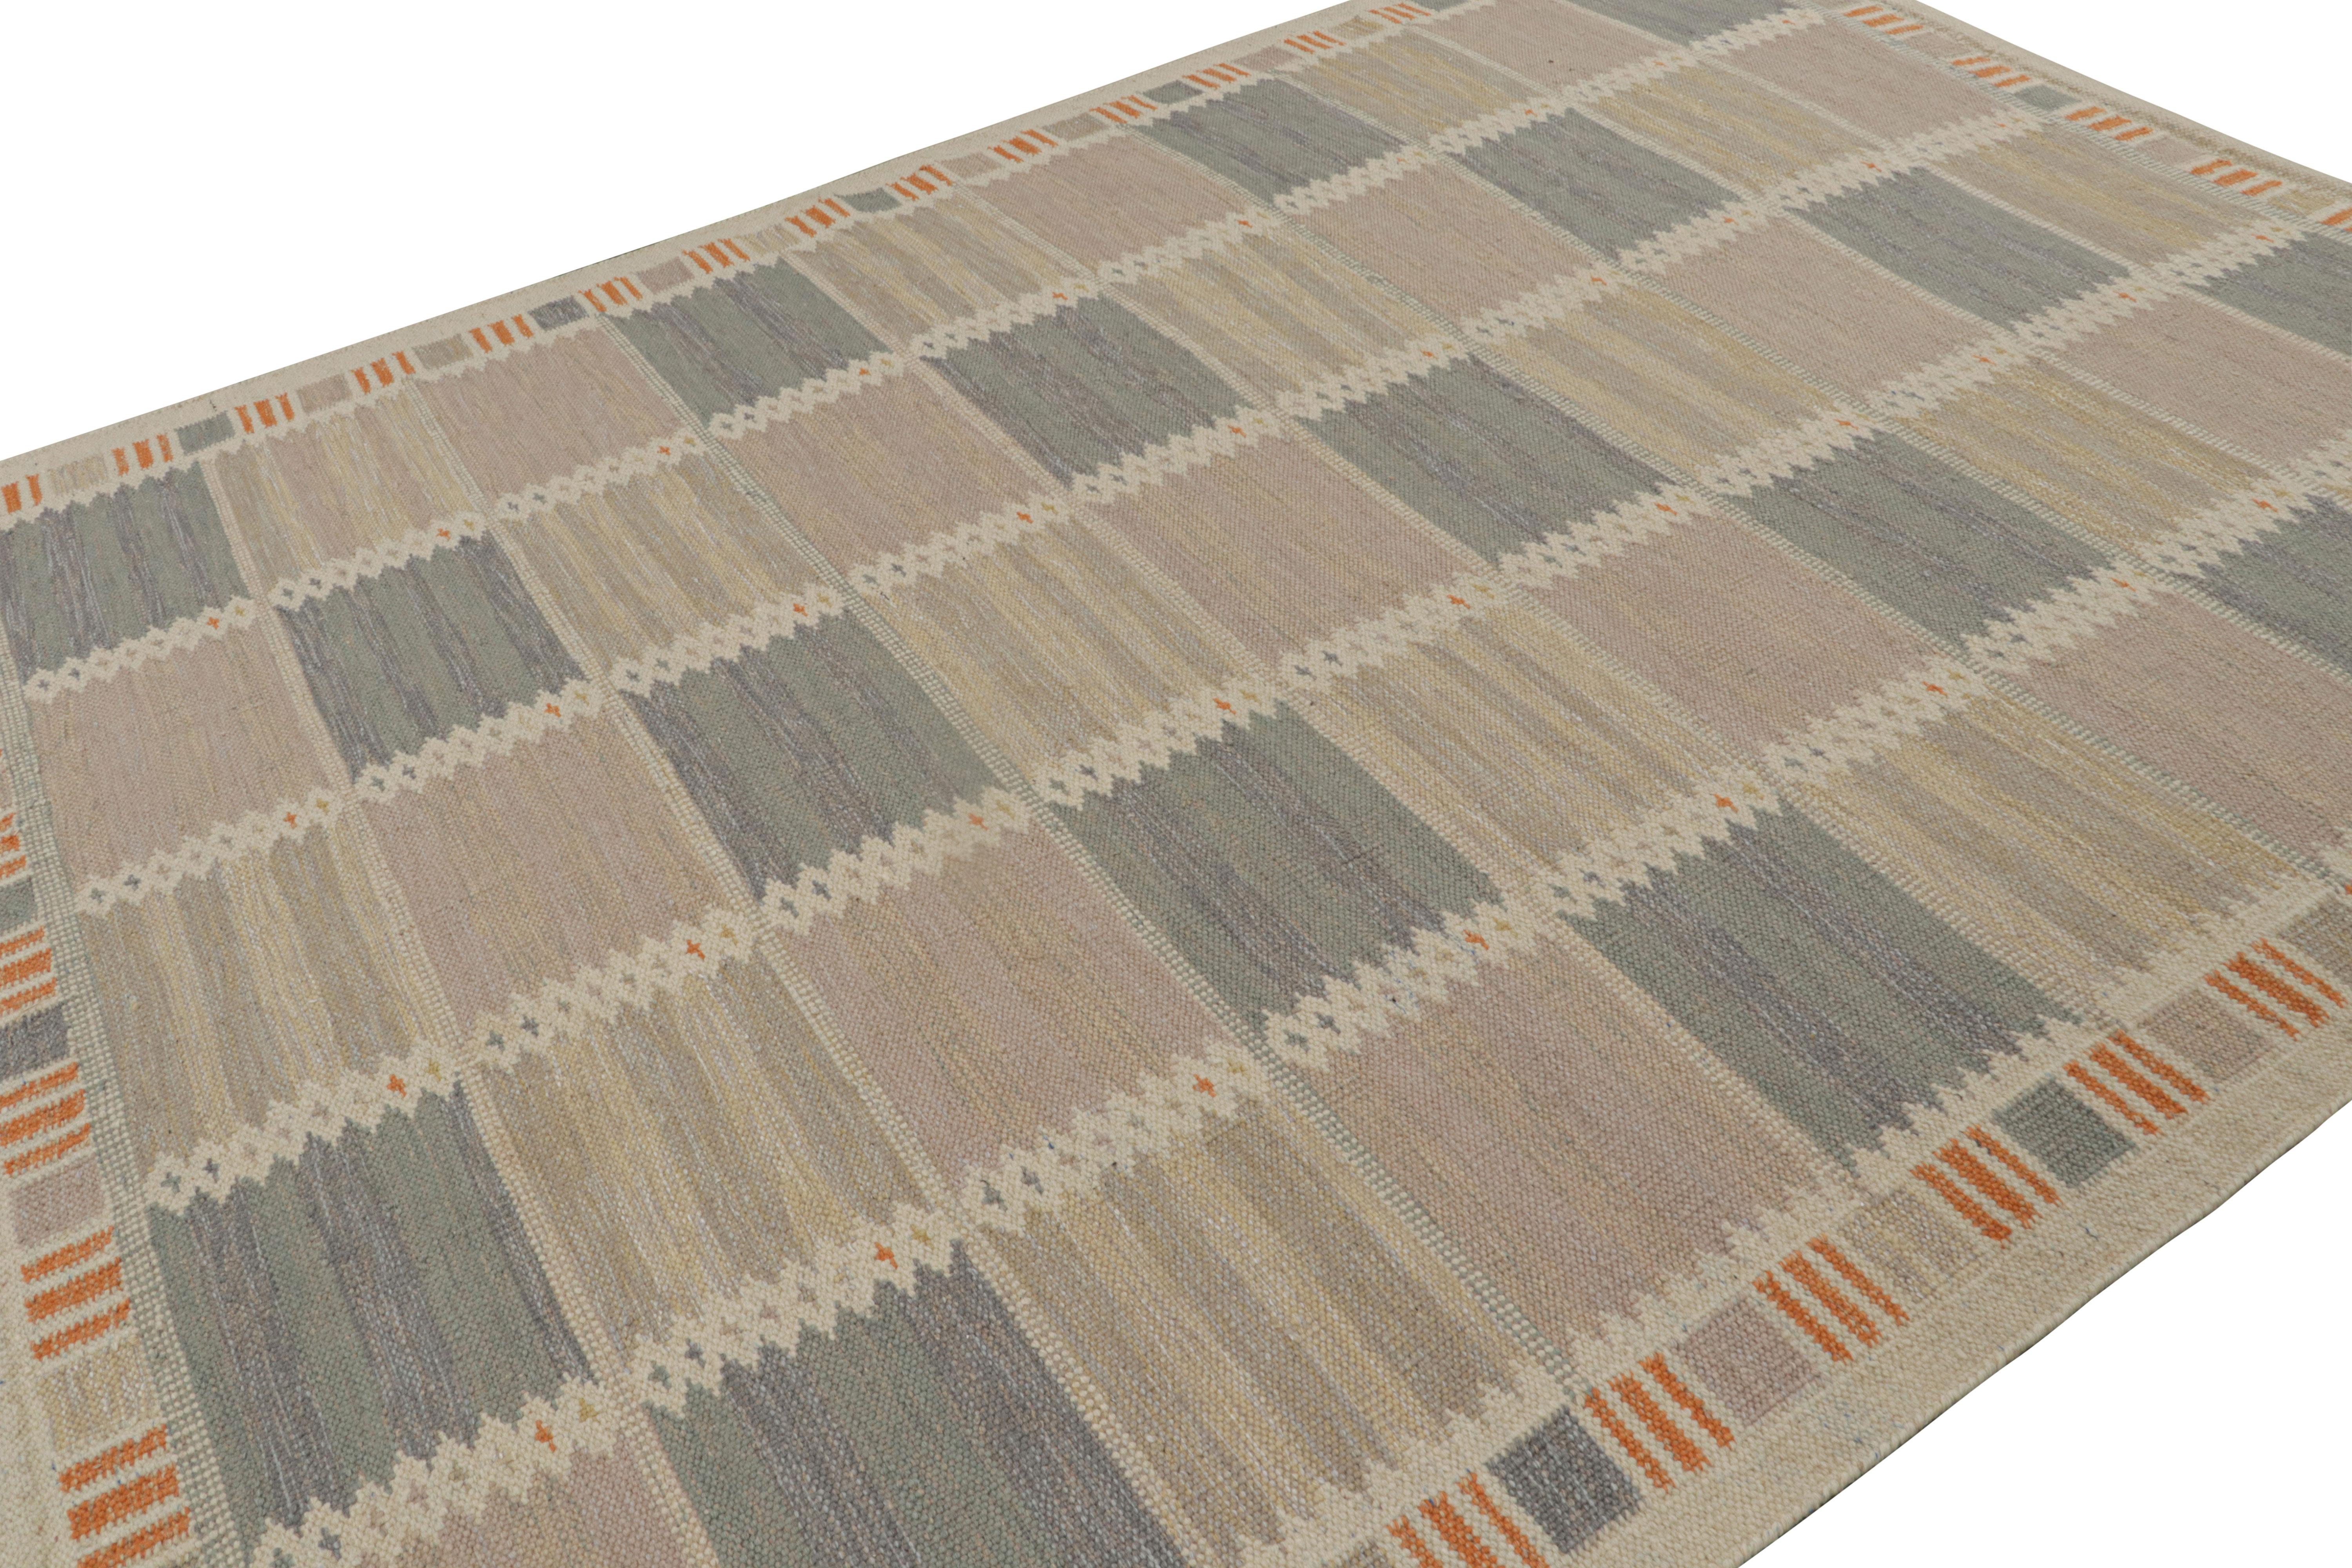 Dieser Kelimteppich im schwedischen Stil (9×12) stammt aus der preisgekrönten skandinavischen Teppichkollektion von Rug & Kilim. Dieses handgewebte Flachgewebe aus Wolle und anderen ungefärbten Naturgarnen ist von den schwedischen Deko-Teppichen